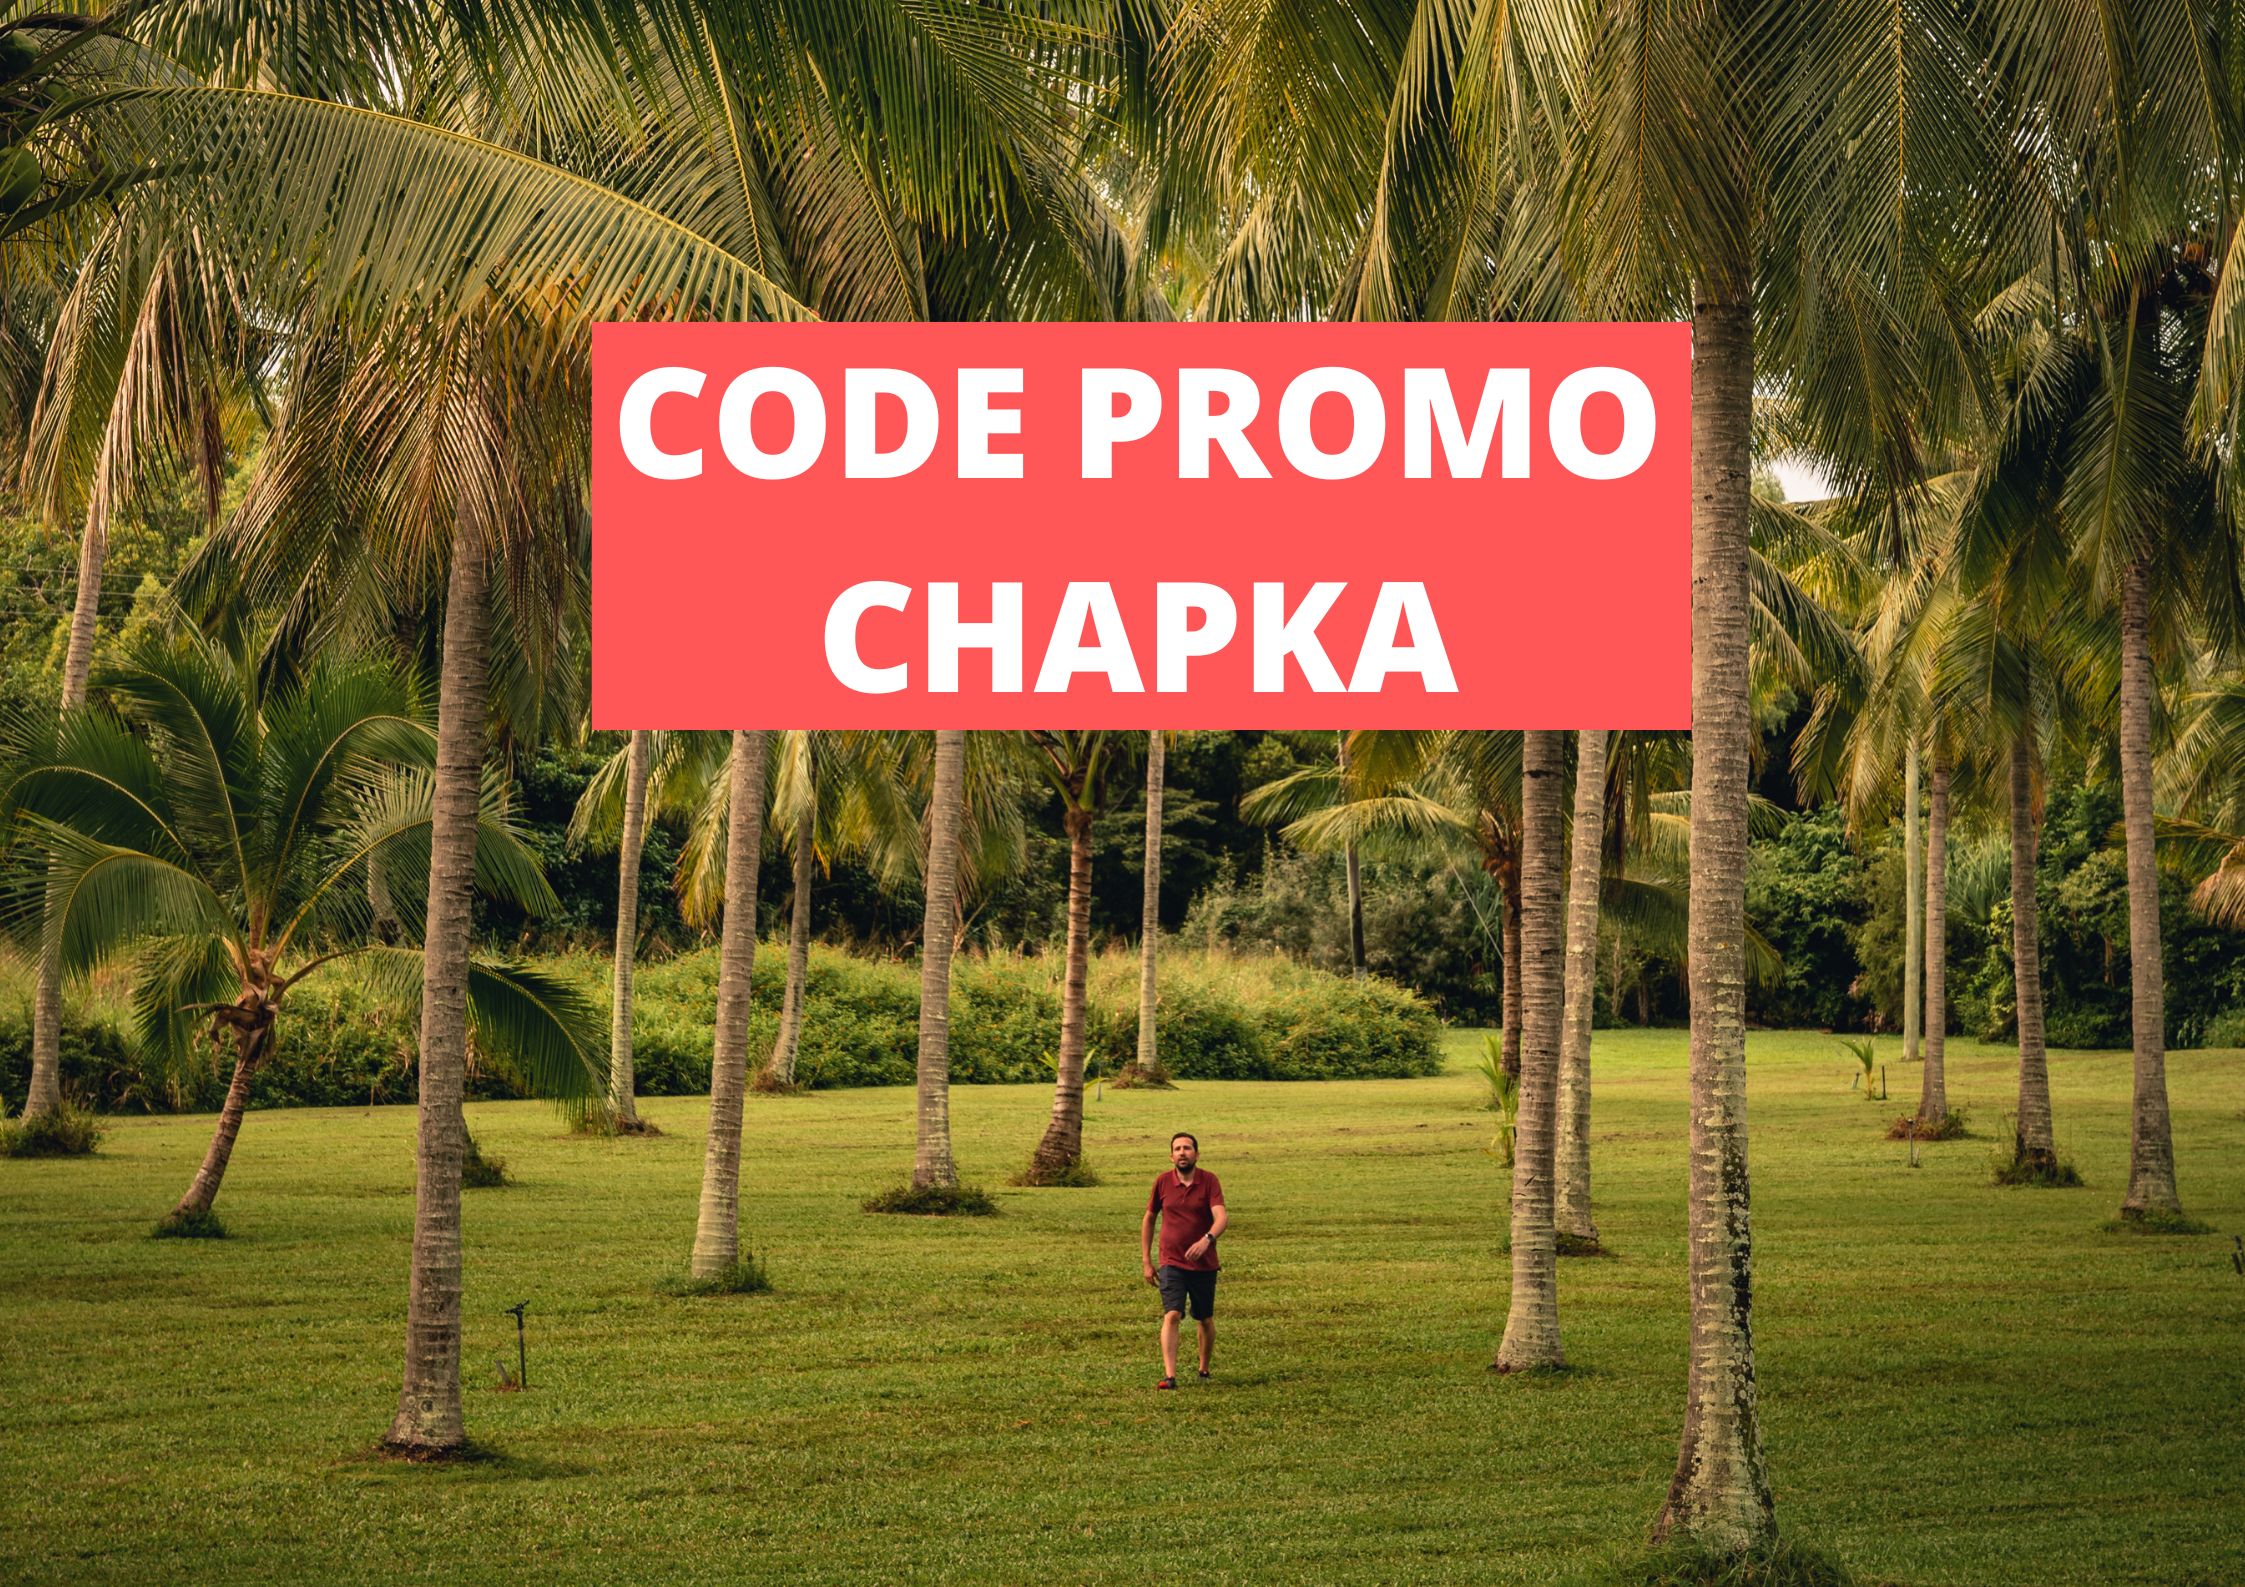 Code promo Chapka assurance 2023 : PVT/WHV, voyages, études et expat